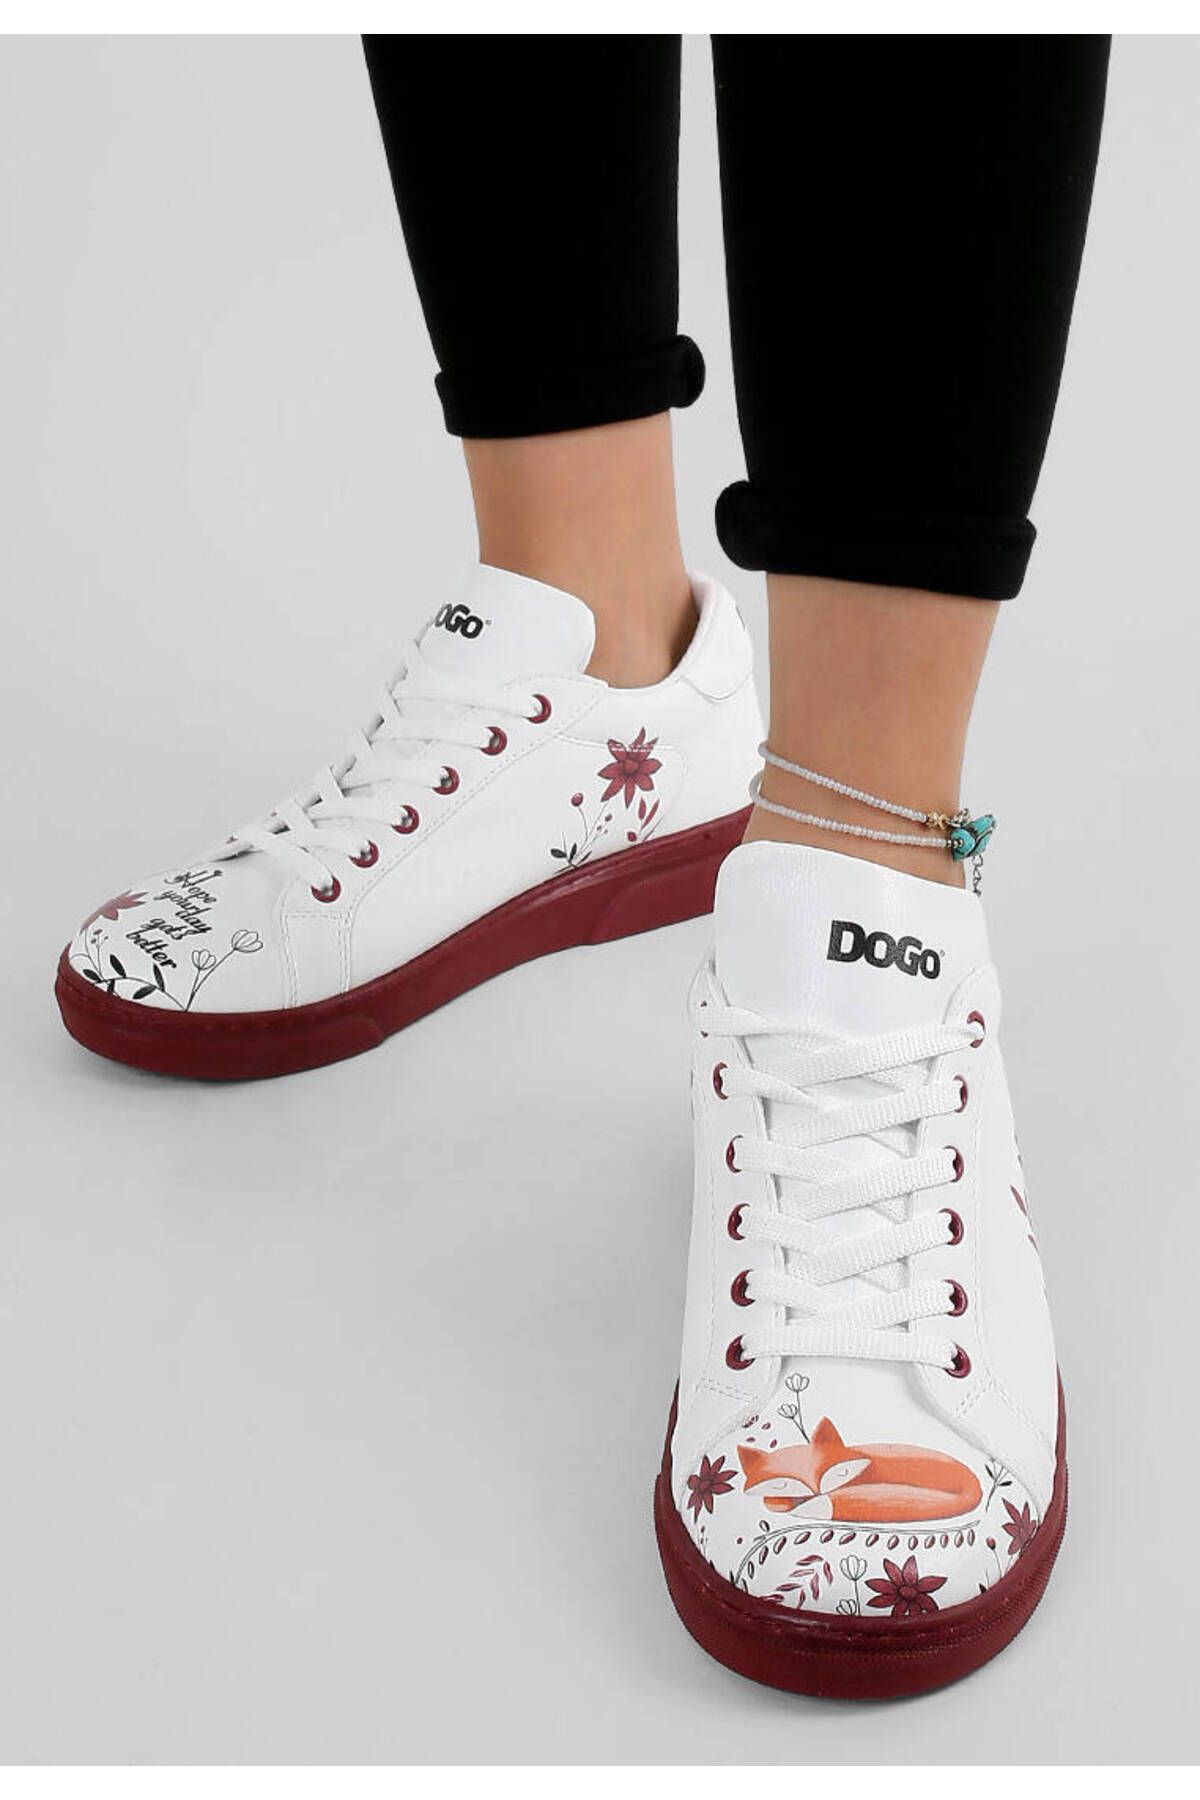 Dogo Kadın Vegan Deri Beyaz Sneakers - Spirit Animal Tasarım